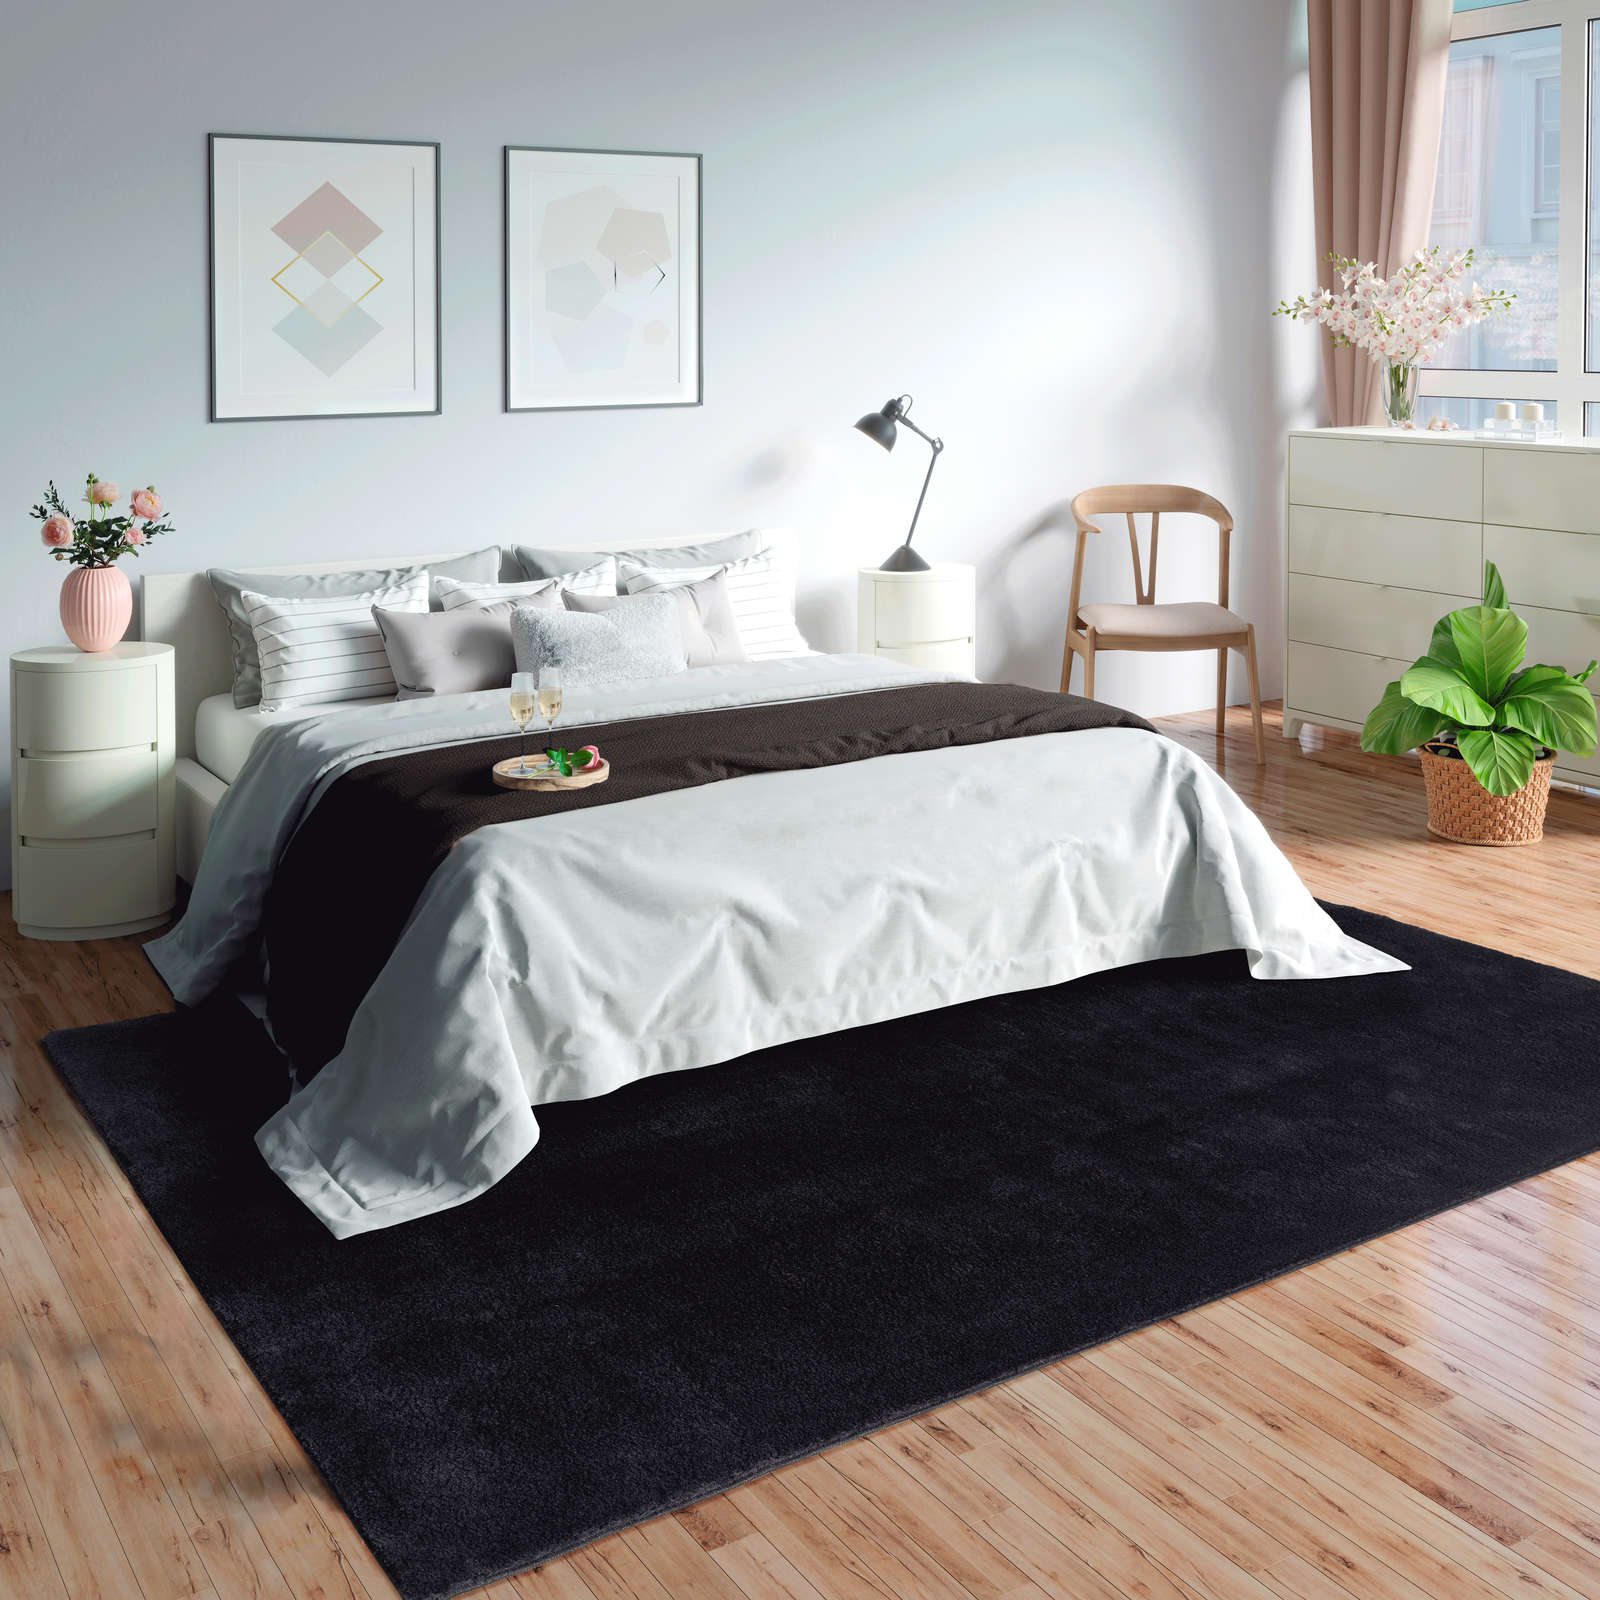             Velvety high pile carpet in black - 230 x 160 cm
        